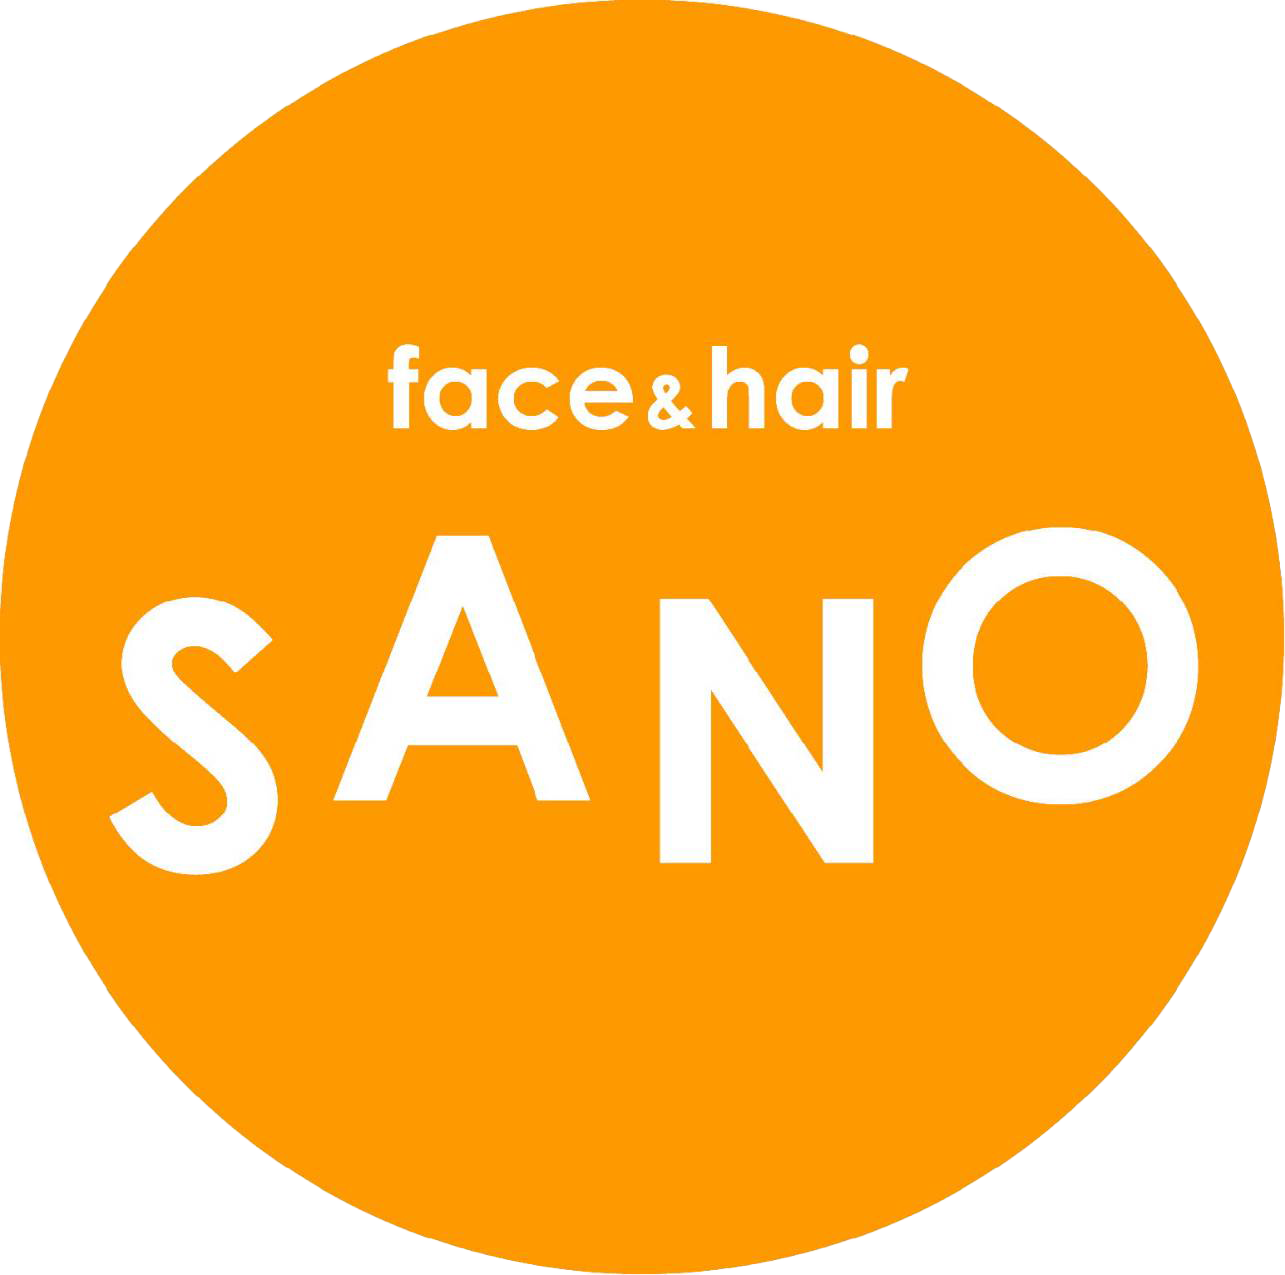 face&hair SANO